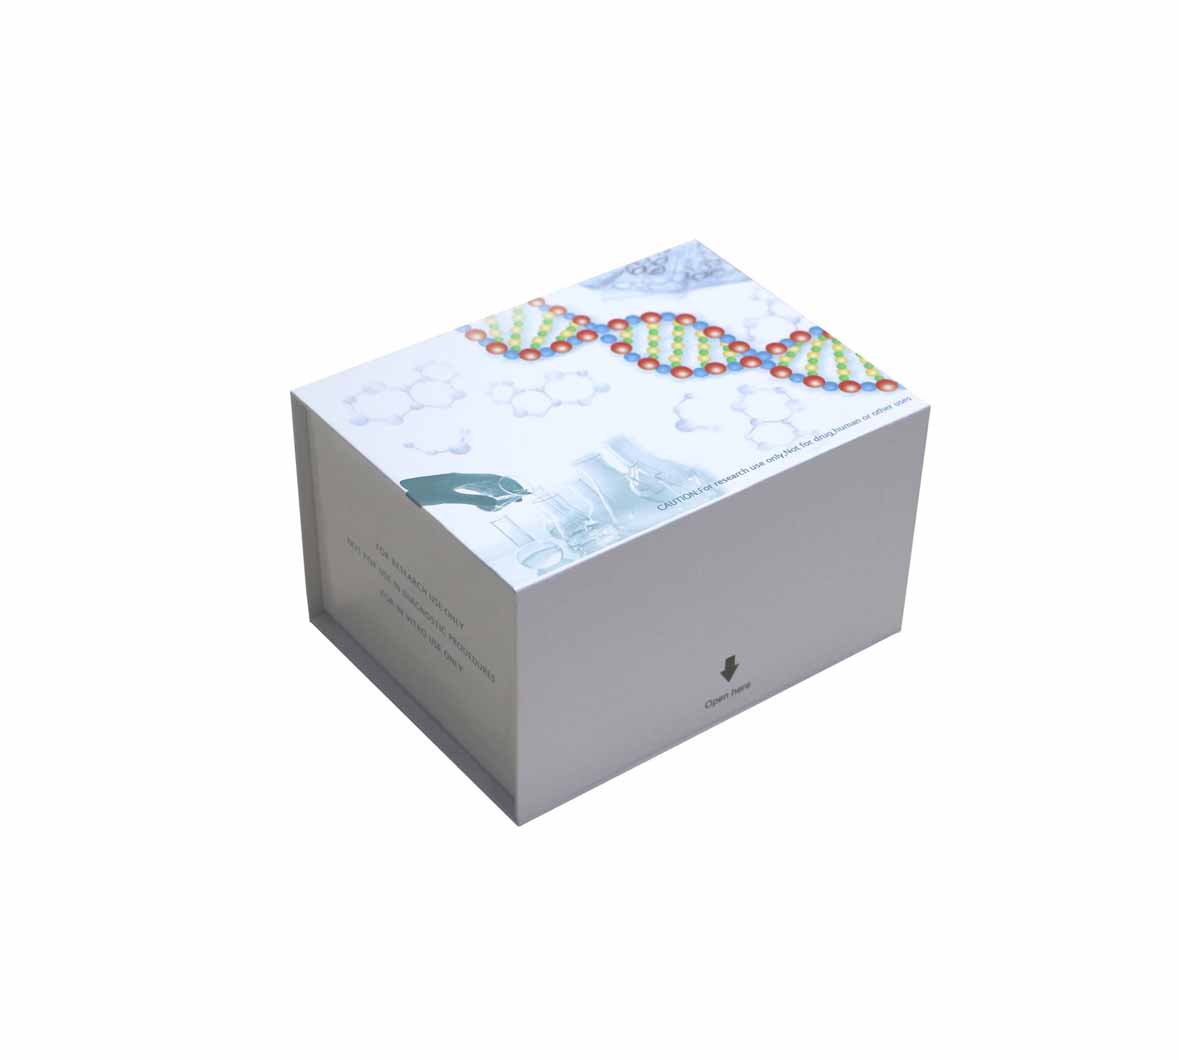 猴凝聚素(CLU)ELISA测定试剂盒